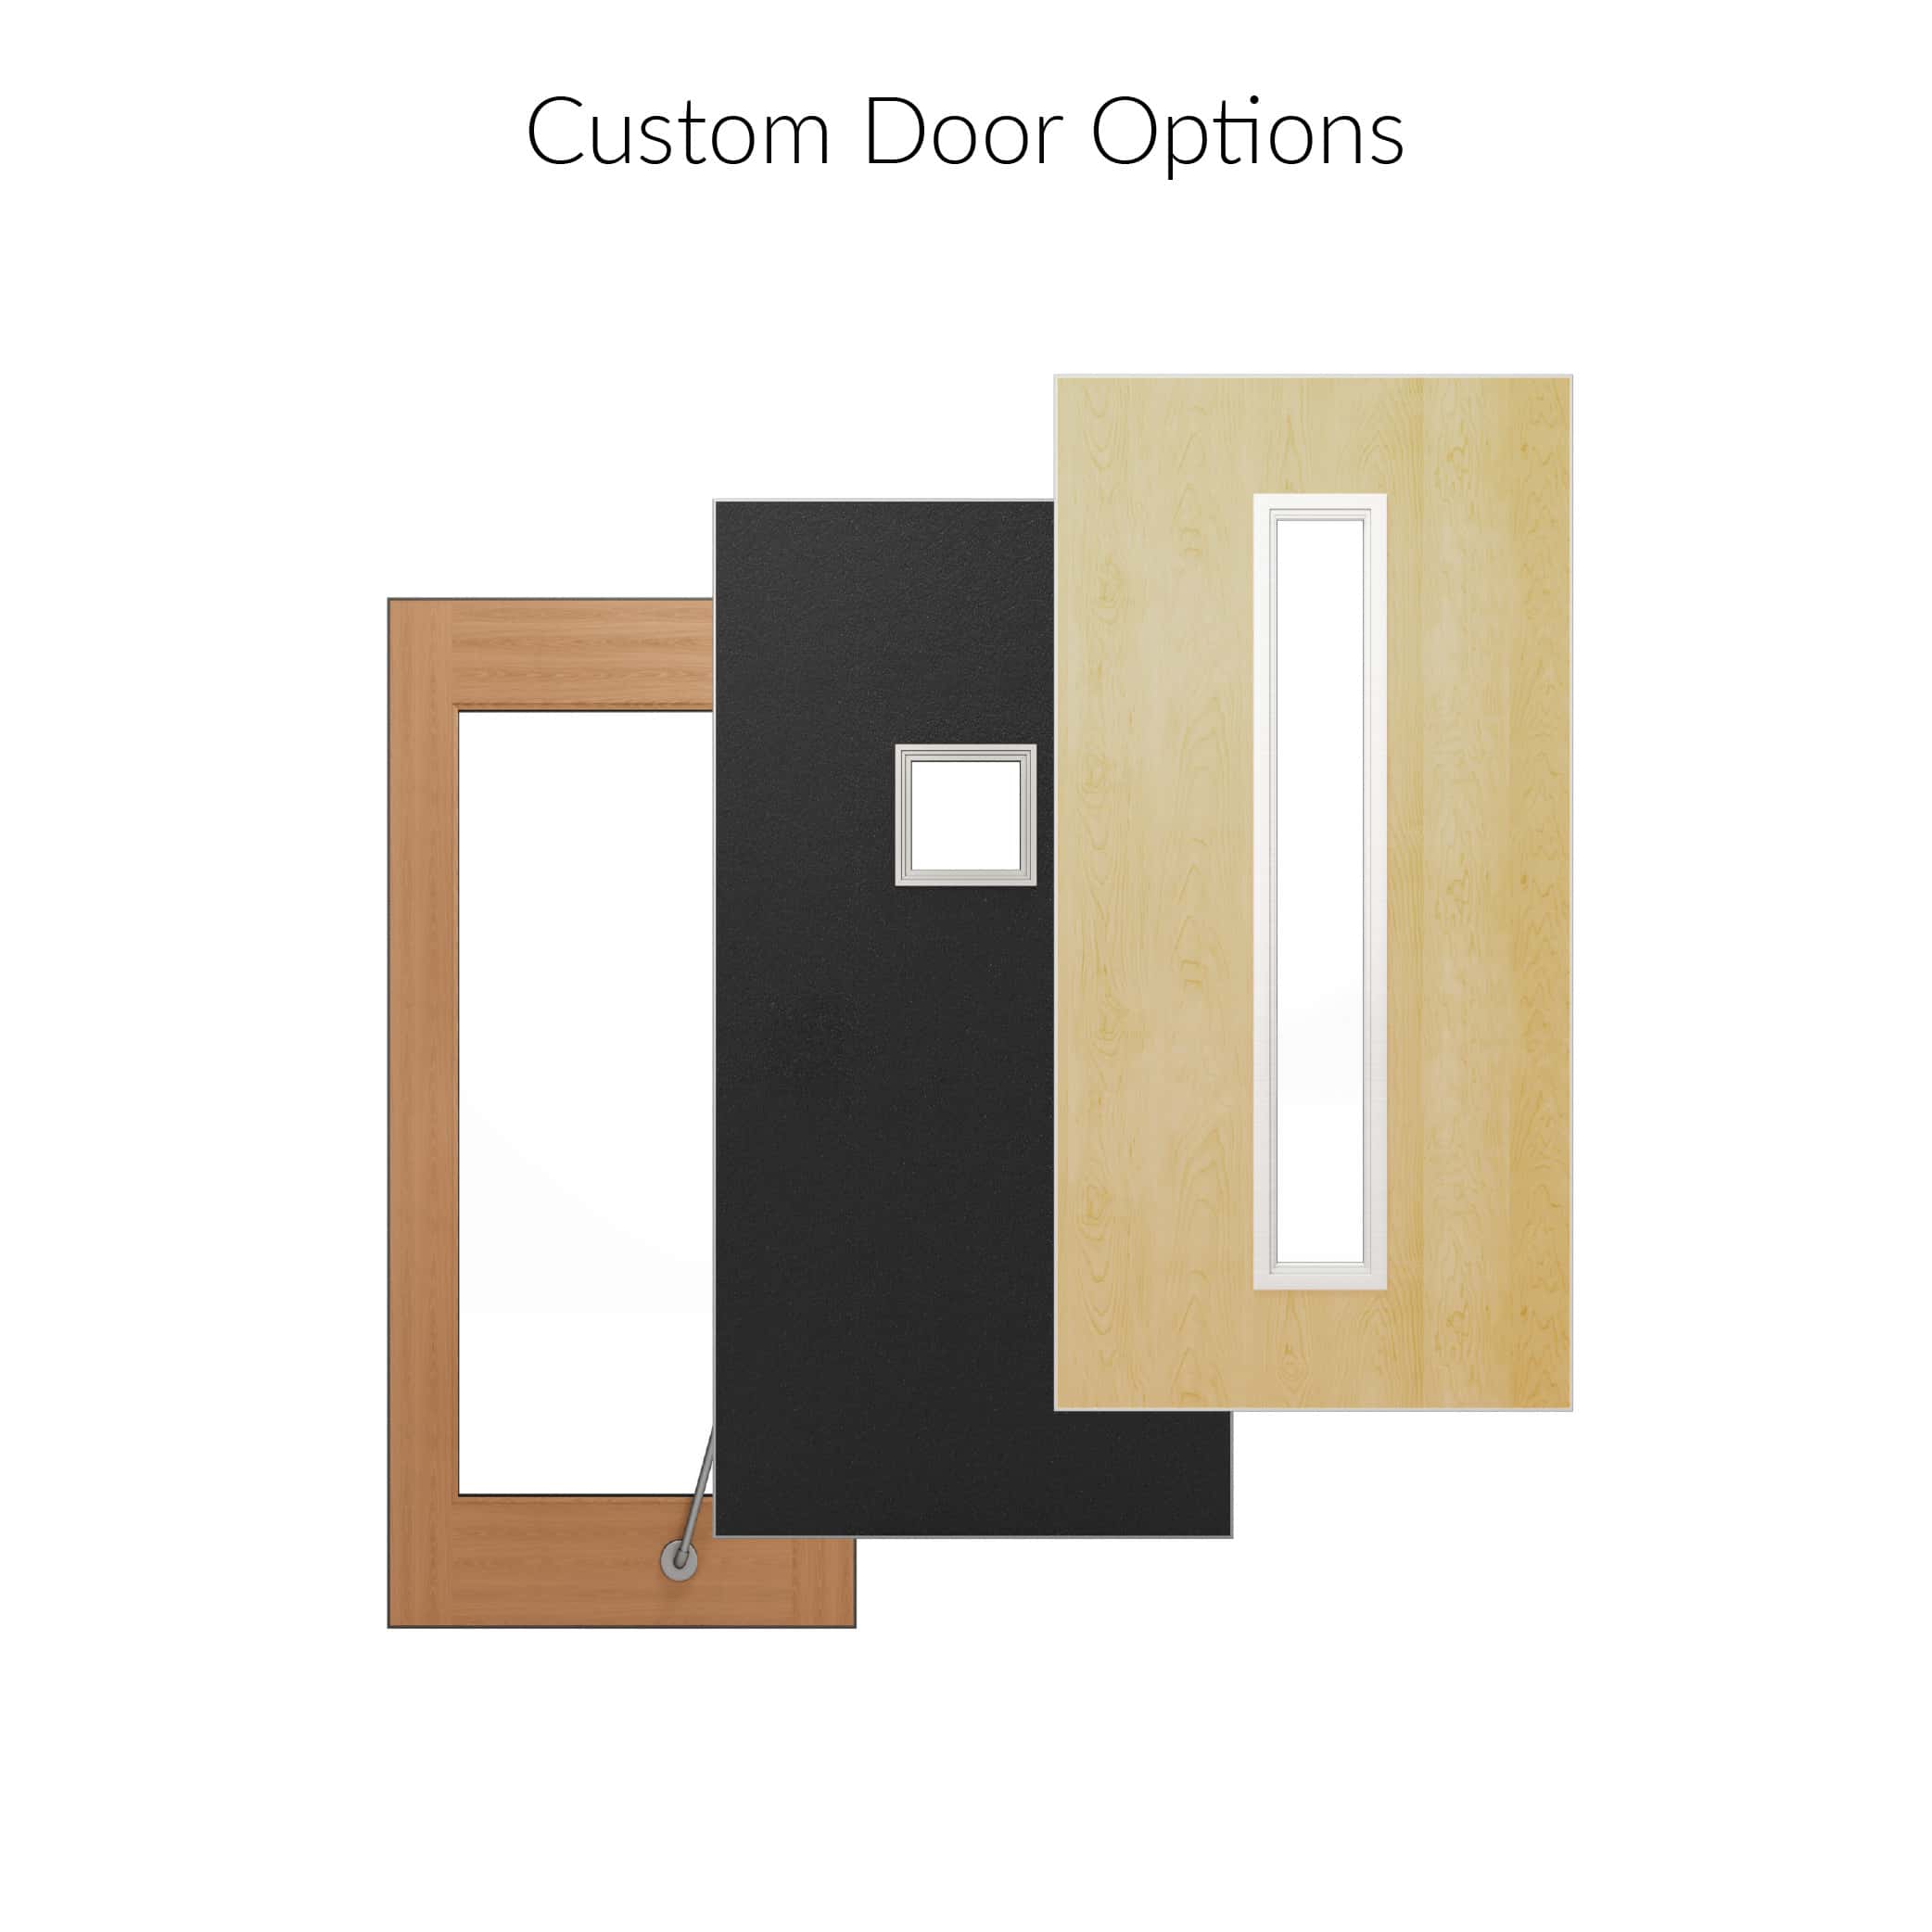 Custom door options.